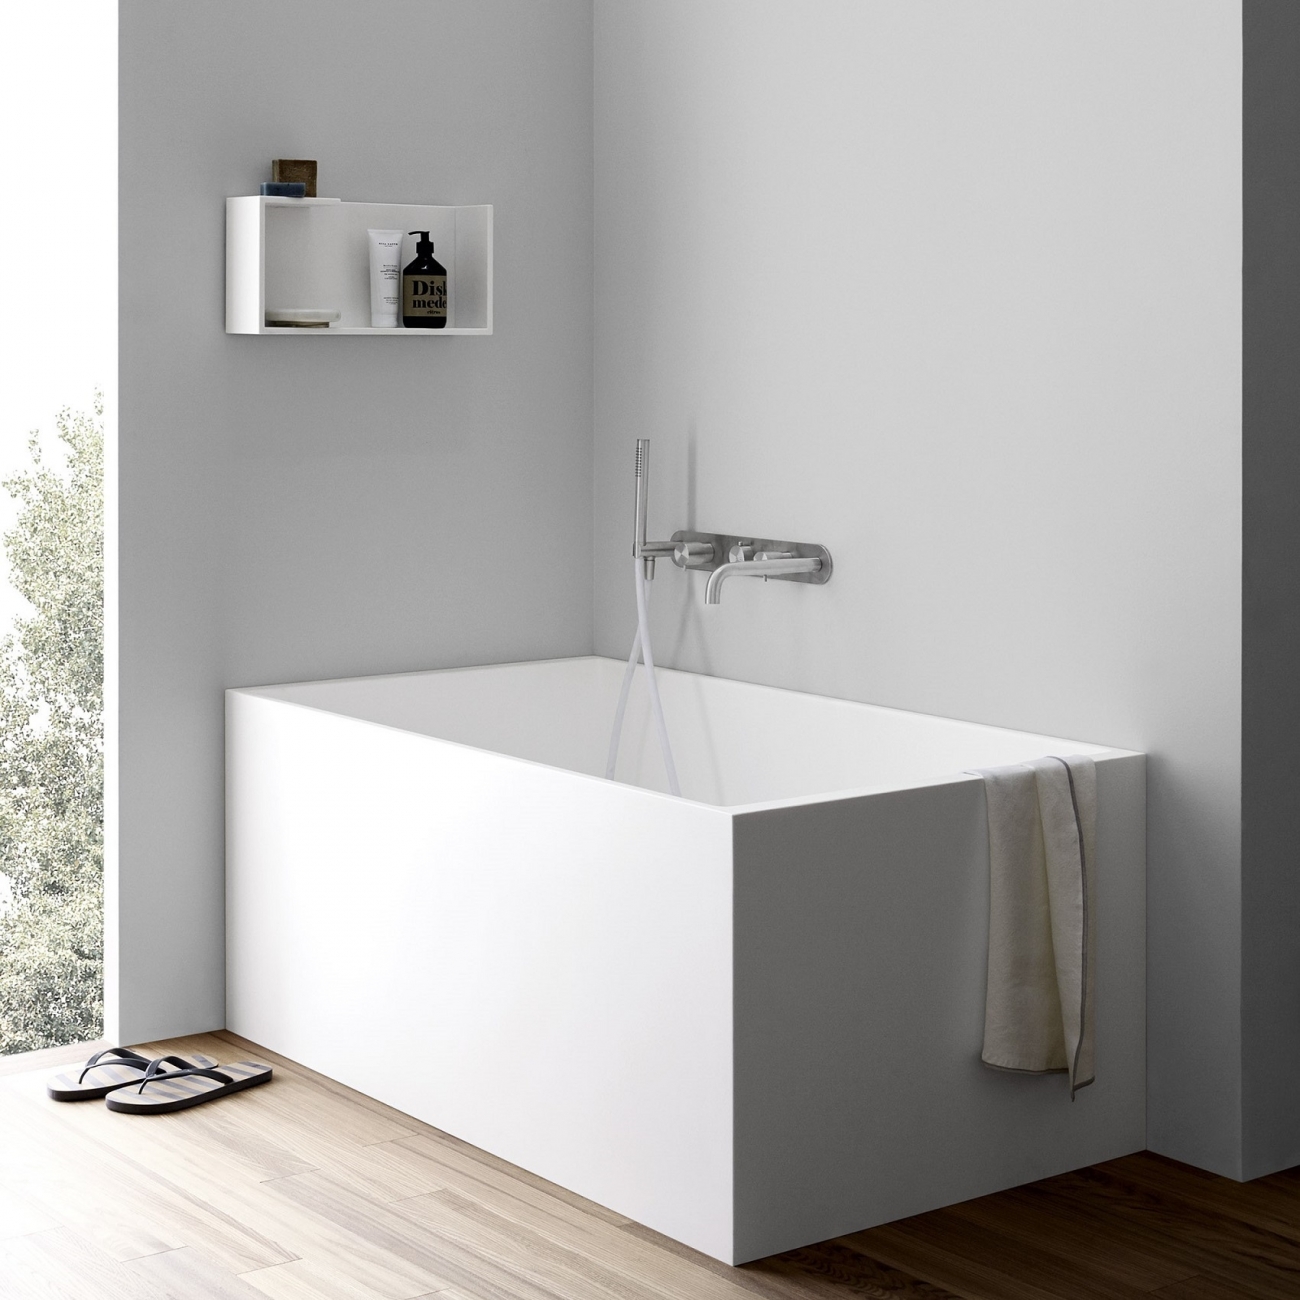 Rexa Design Unico Mini Bathtub Tattahome, Mini Bathtub Shower